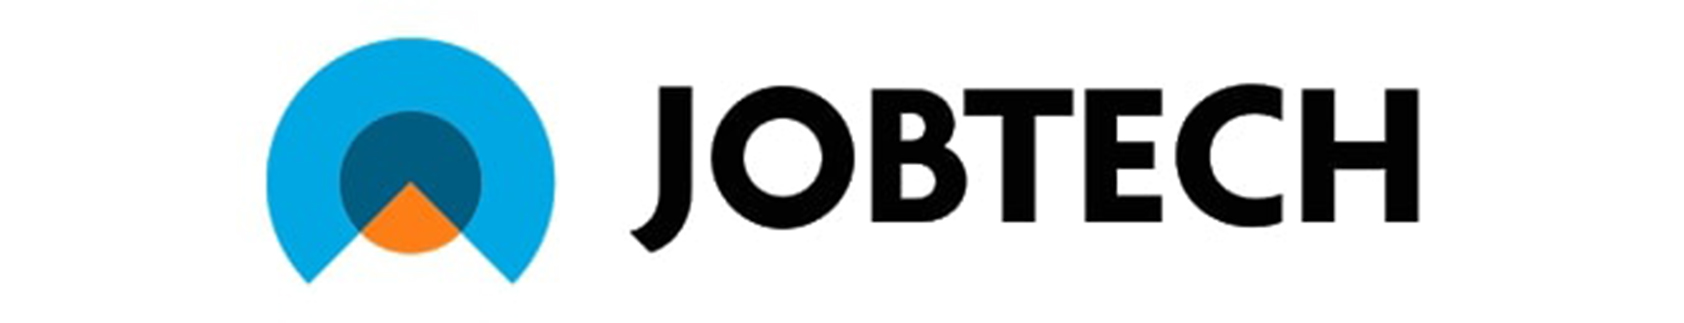 Jobtech logo